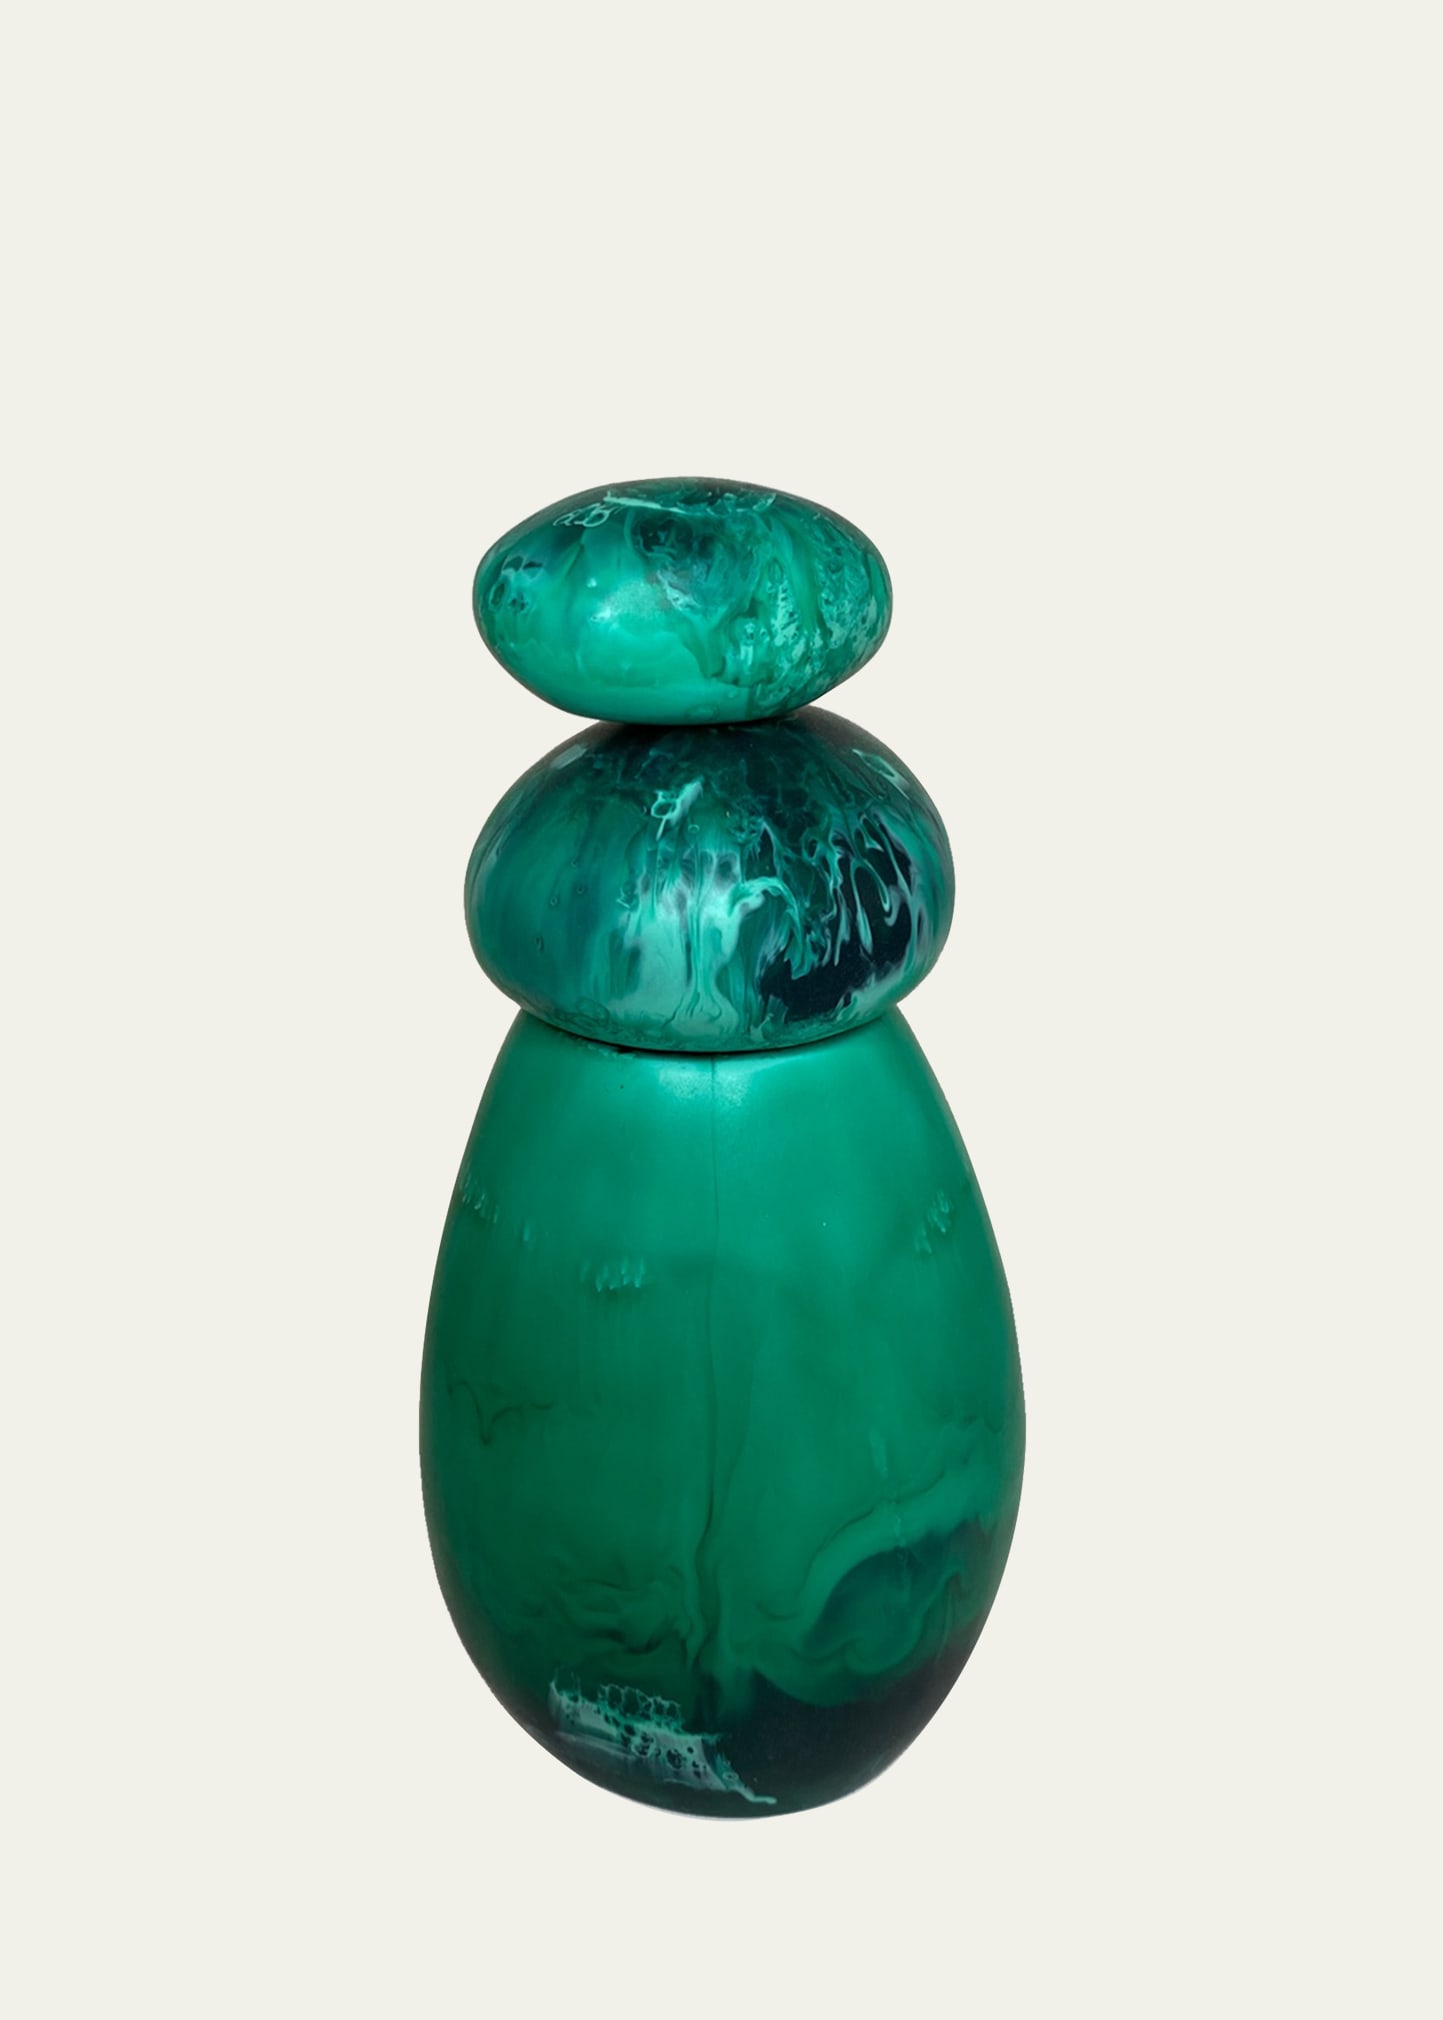 Dinosaur Designs Boulder Pepper Grinder In Emerald